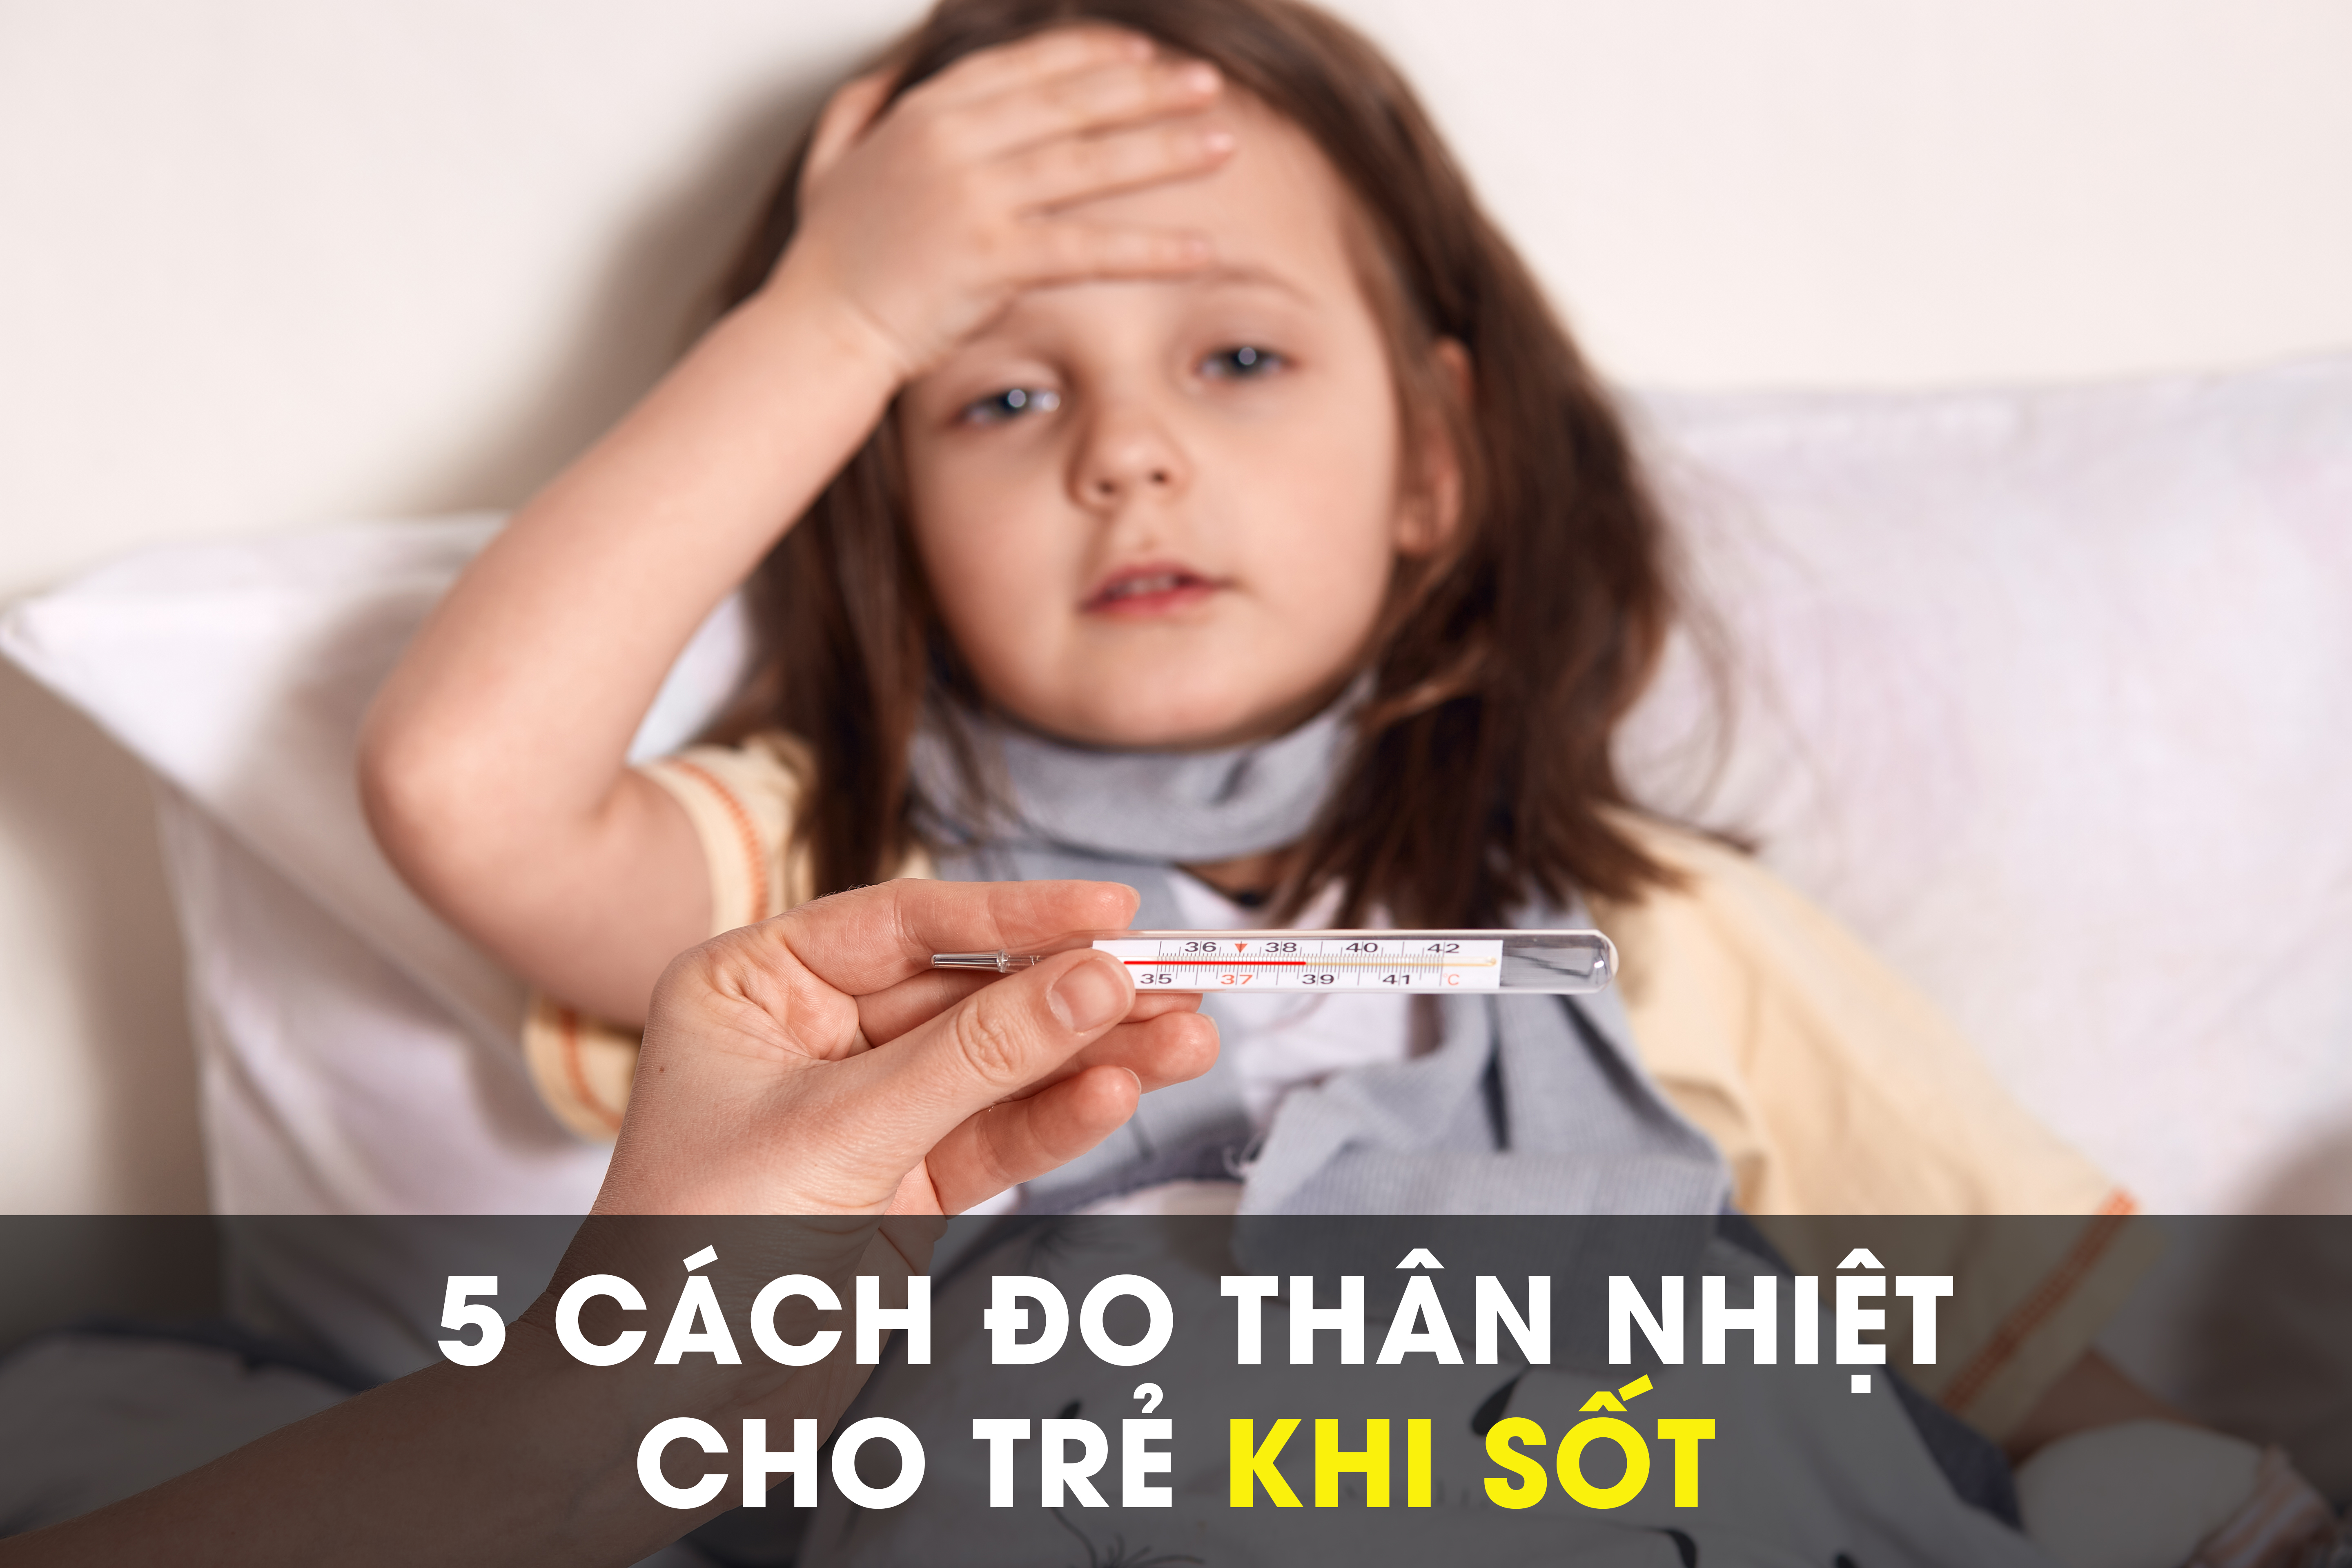 5 cách đo thân nhiệt cho trẻ khi sốt 